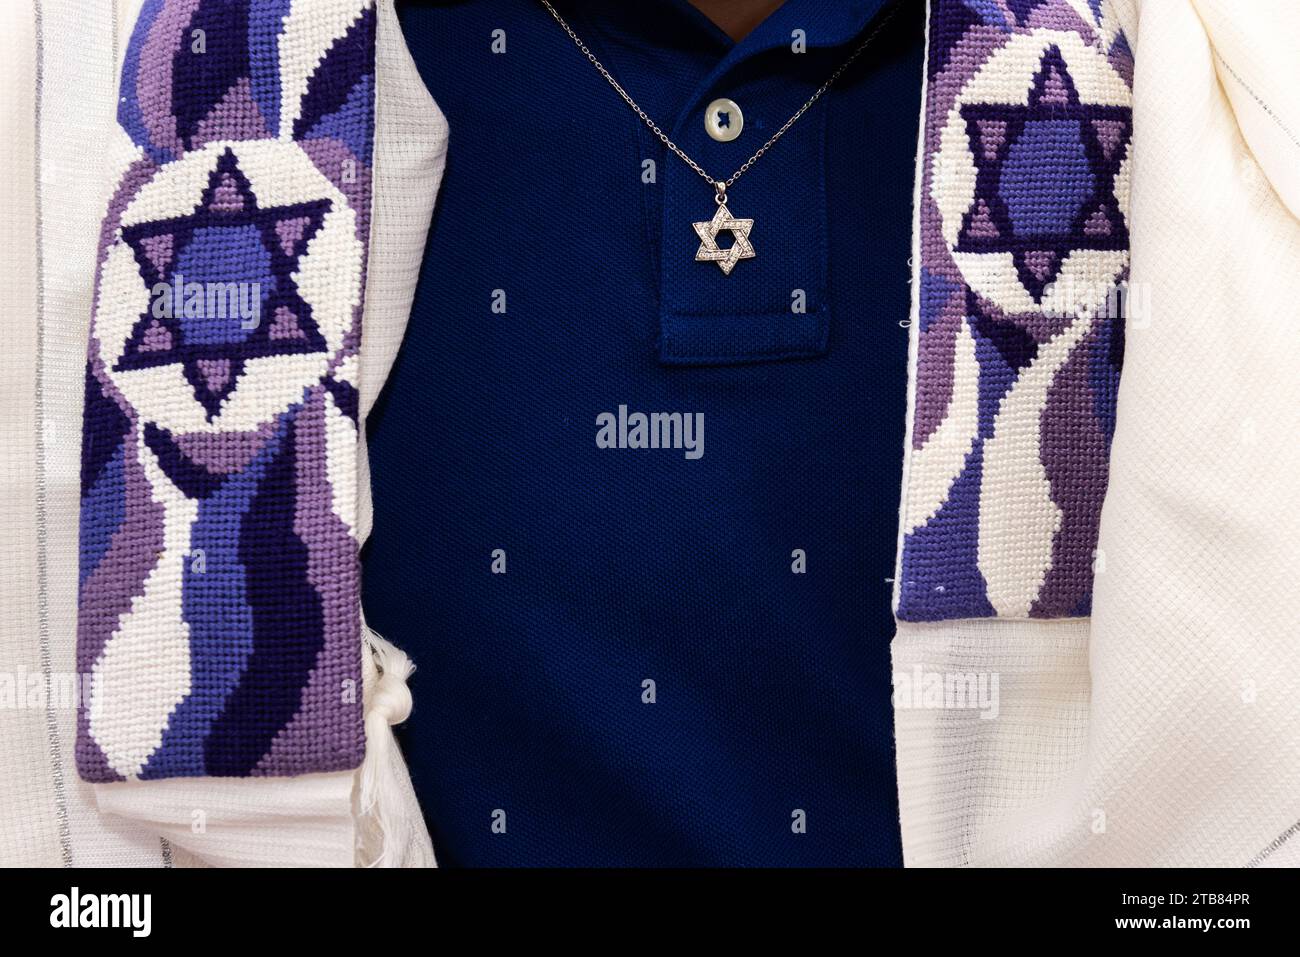 Dettaglio di un uomo ebreo che indossa un tallit o uno scialle di preghiera decorato con stelle ebraiche e una collana con un ciondolo Magen David dorato. Foto Stock